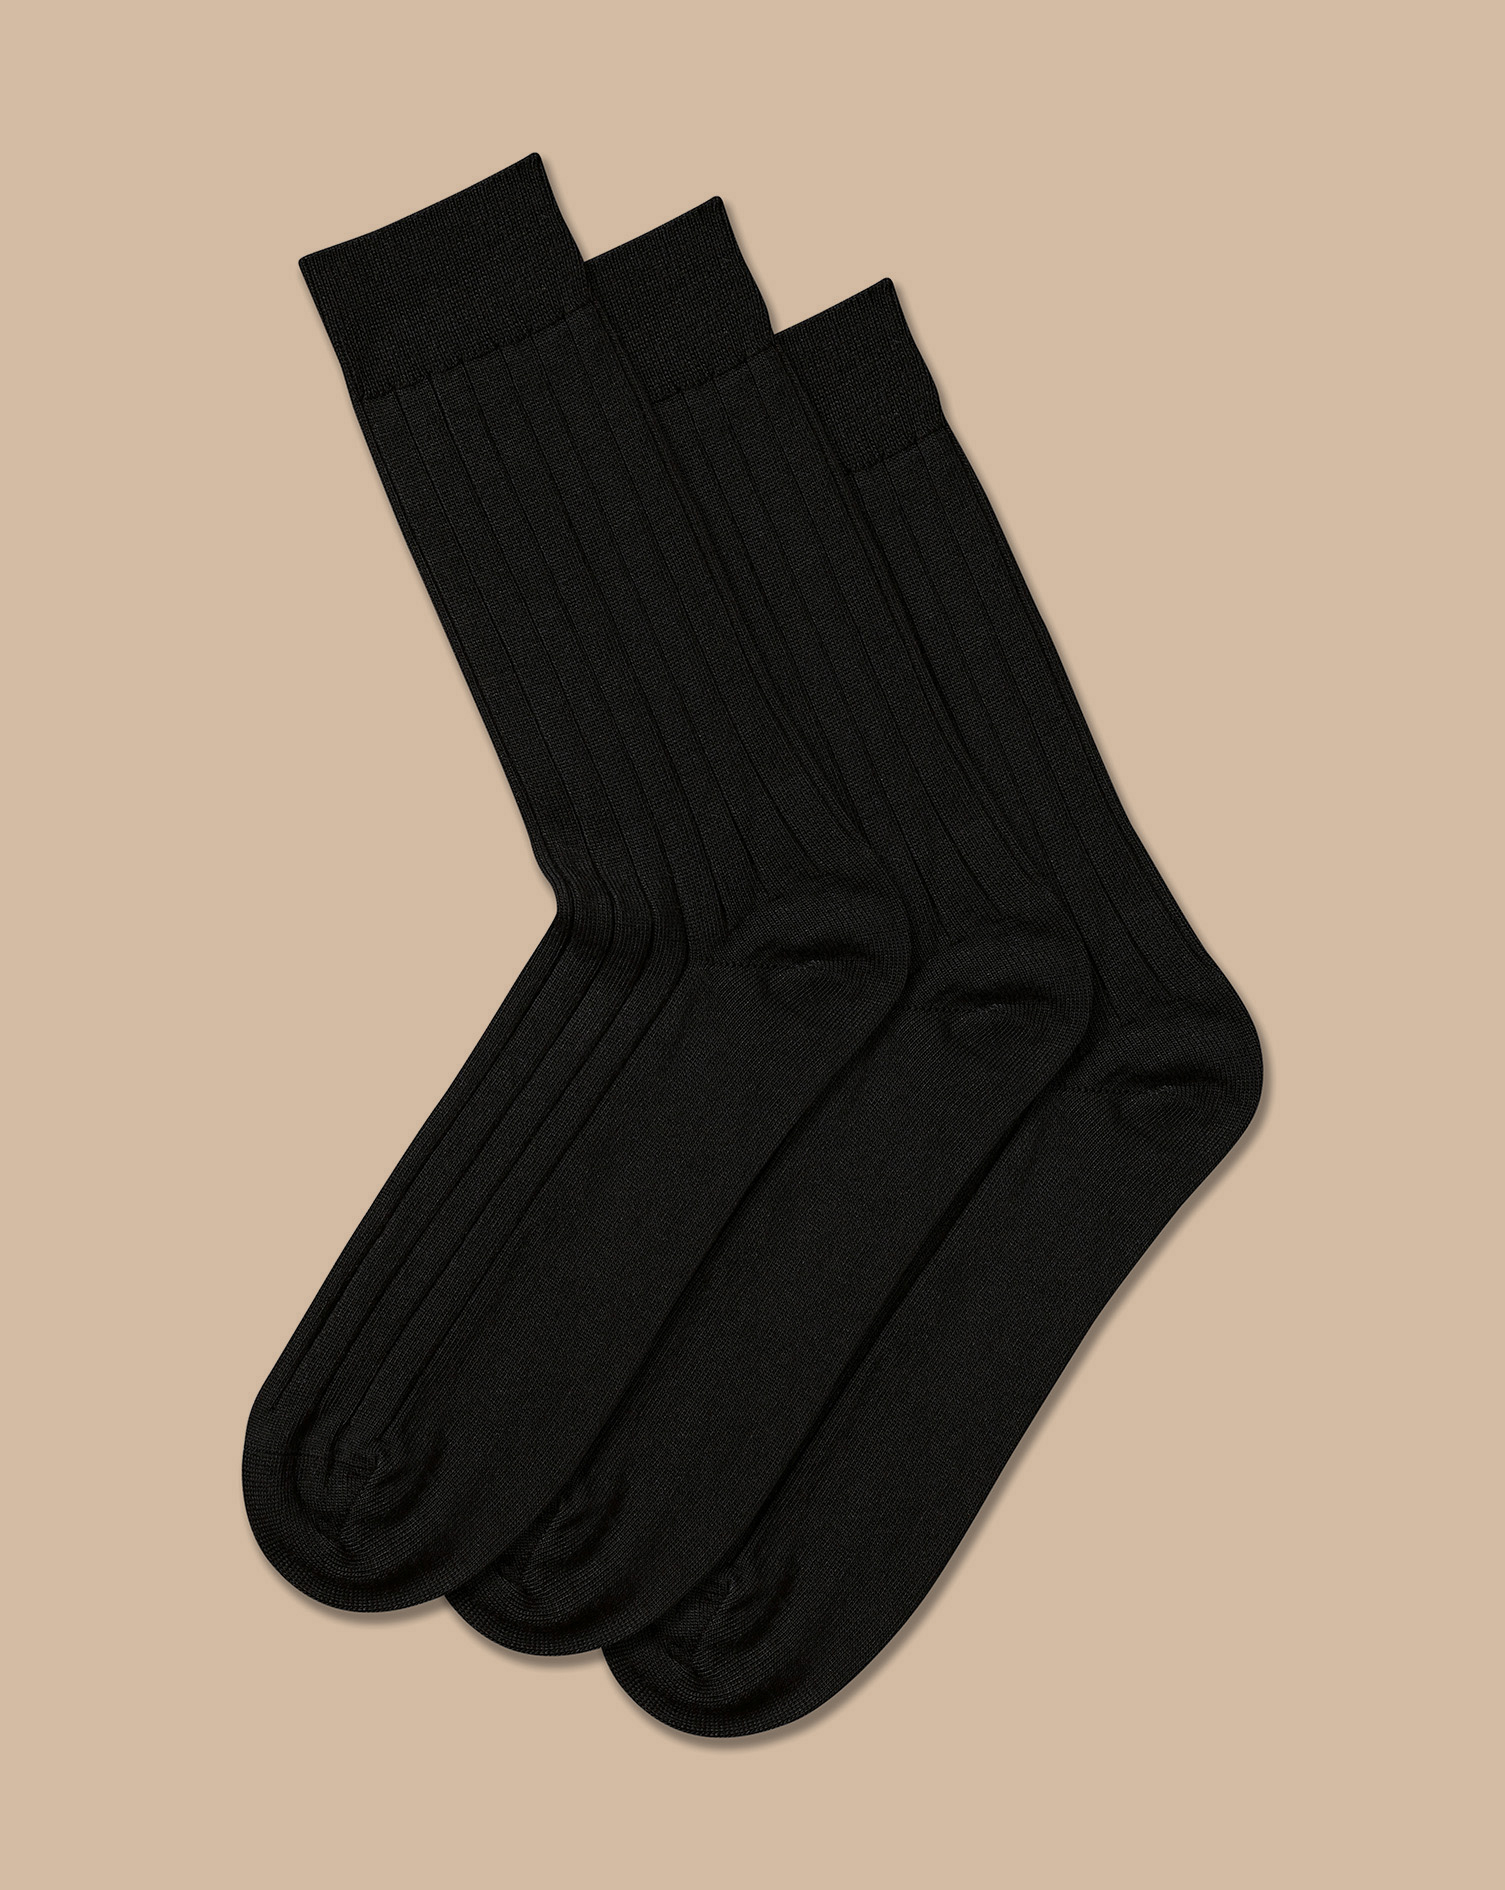 Men's Charles Tyrwhitt Merino Blend 3 Pack Socks - Black Size 6-10 Wool
